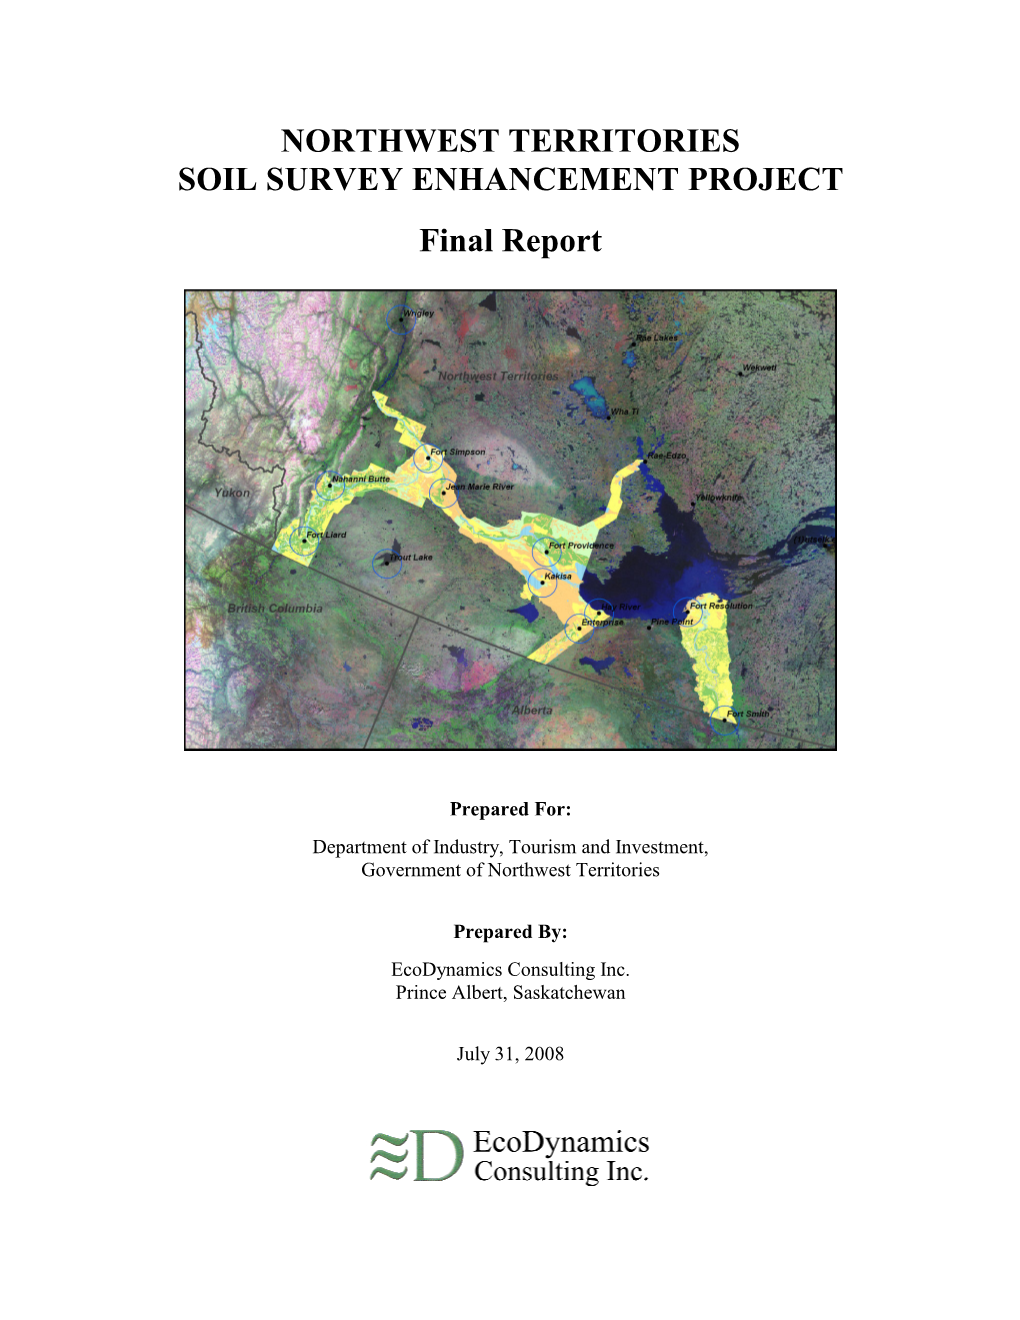 Northwest Territories Soil Survey Enhancement Project